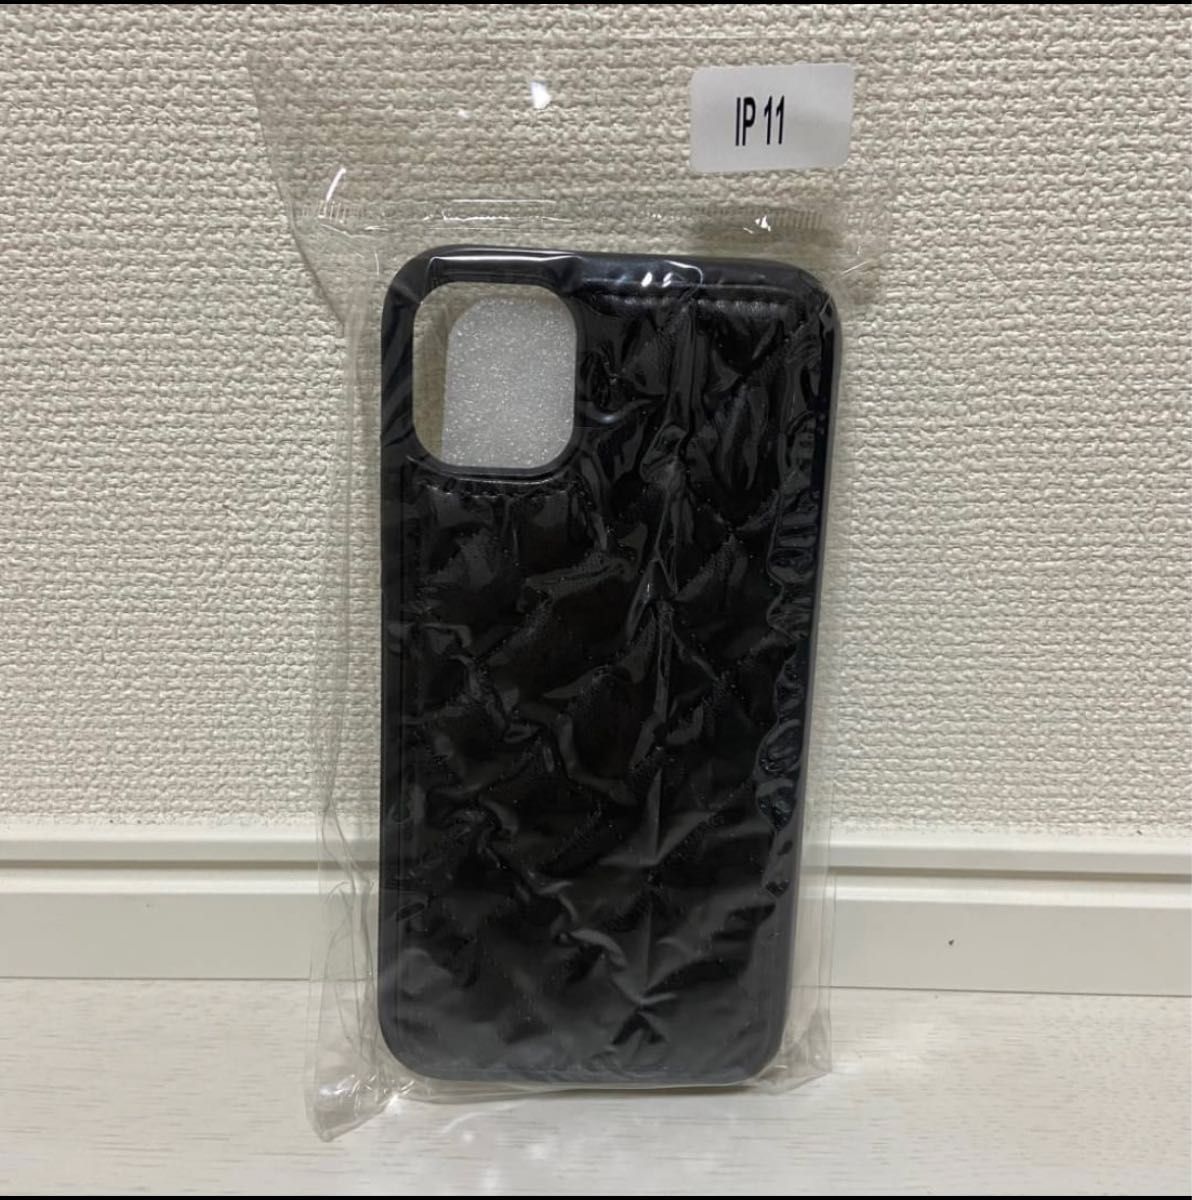 iPhoneX/XS ブラック 黒色 iPhoneケース 携帯ケース シンプルケース アイフォン オシャレ おしゃれ